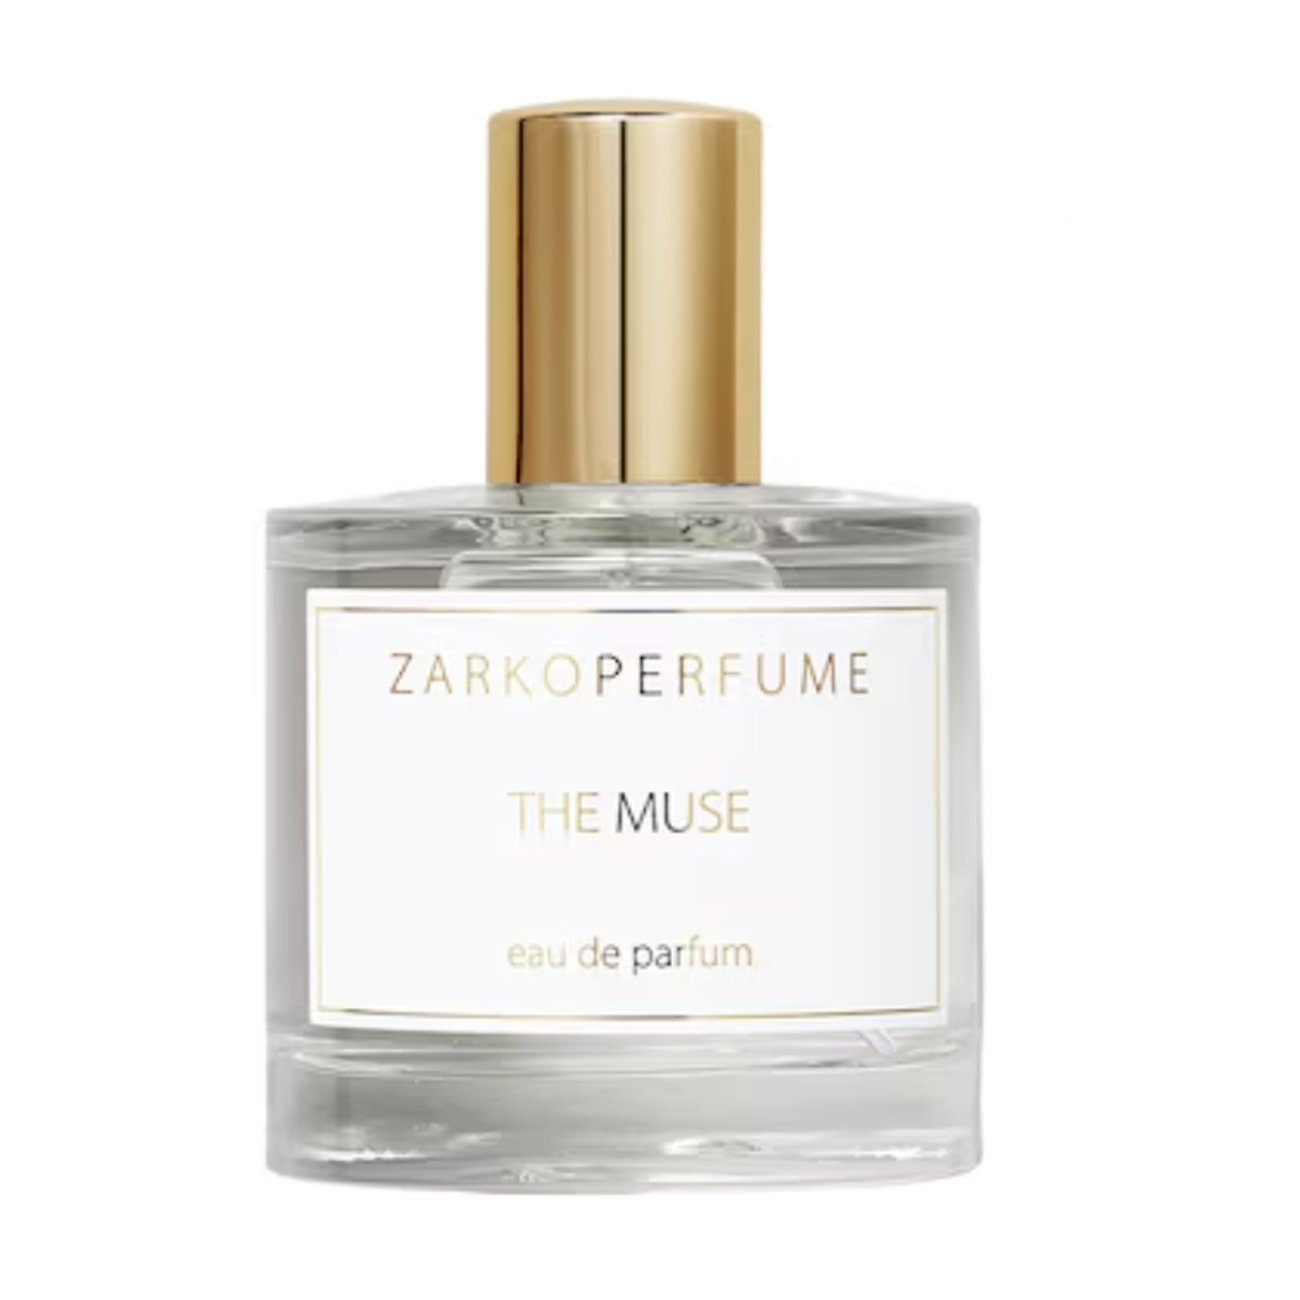 Zarkoperfume - The Muse Eau de Parfum